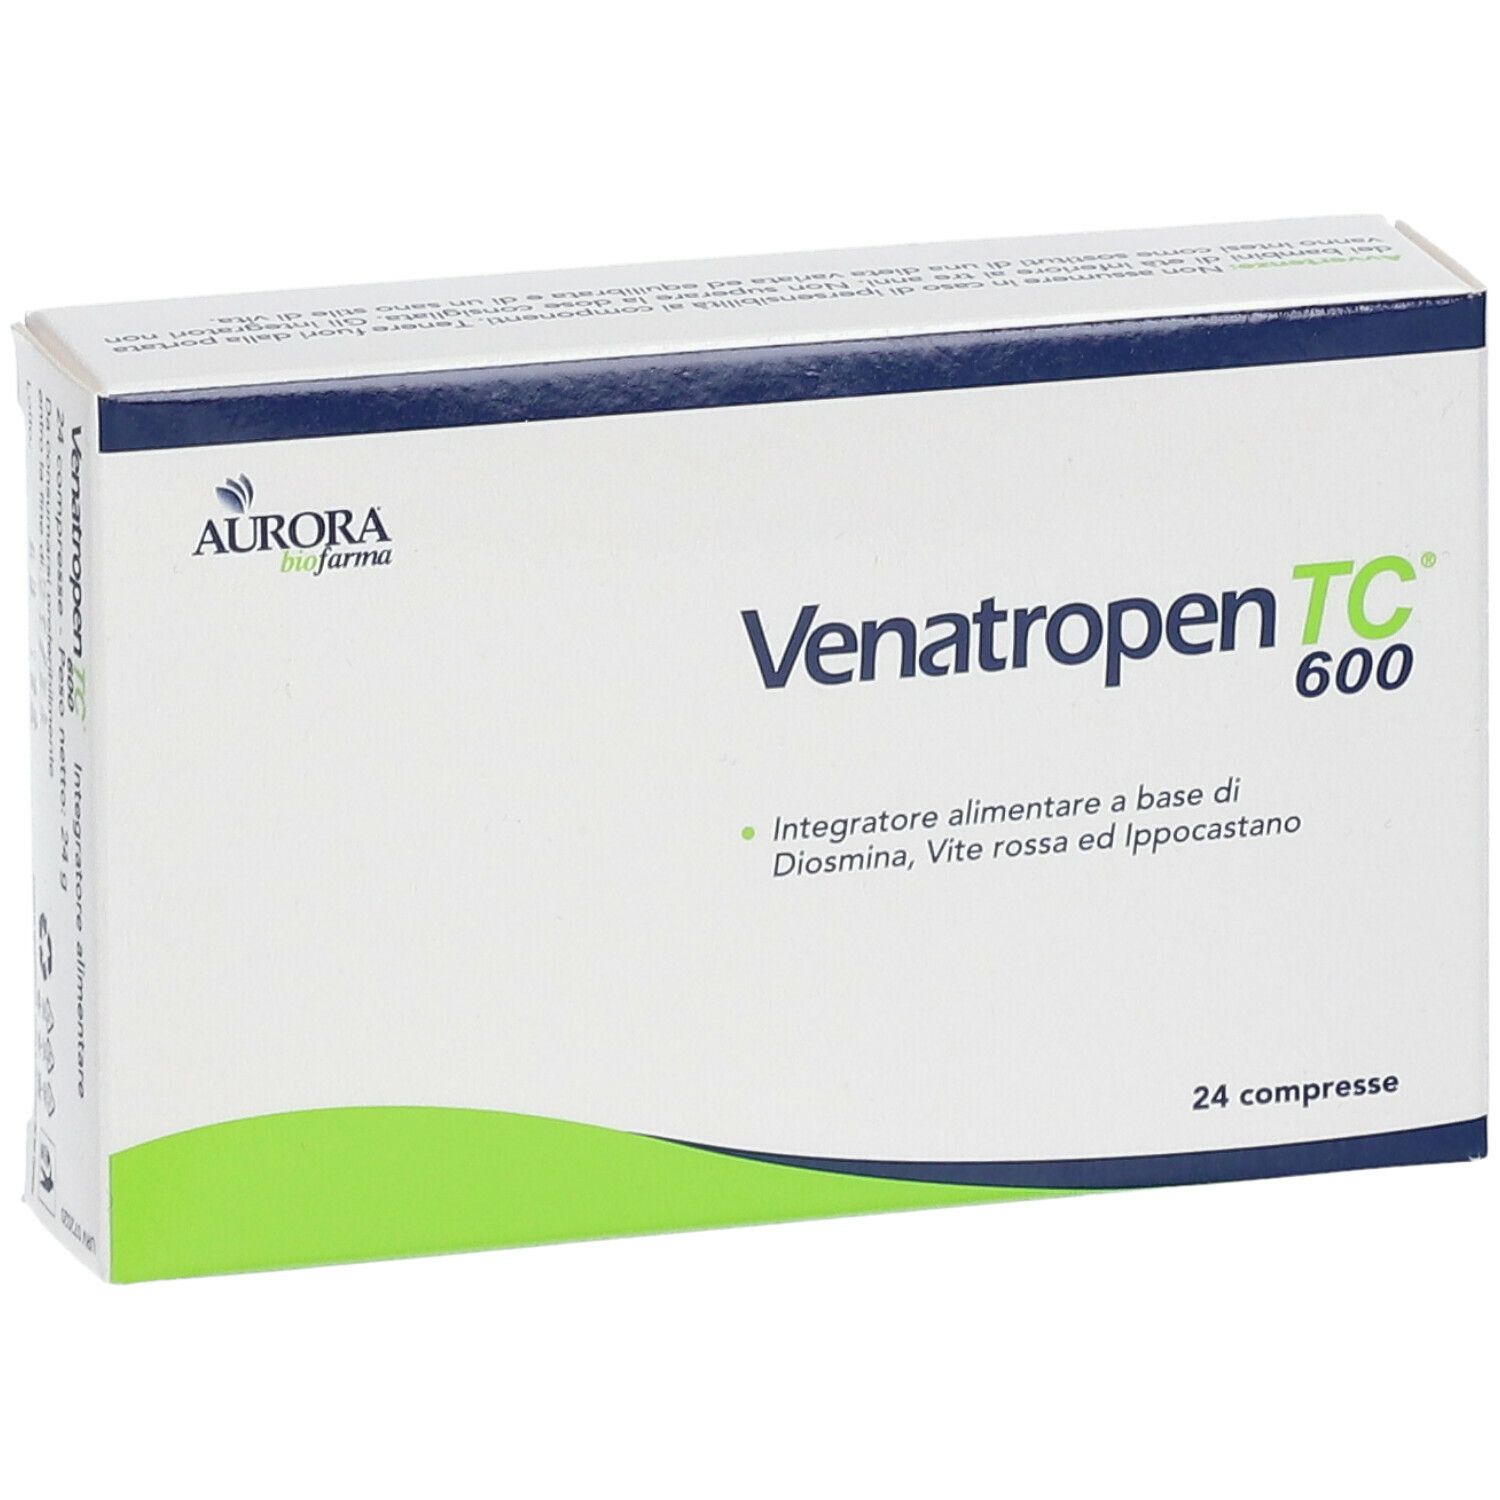 Venatropen TC® 600